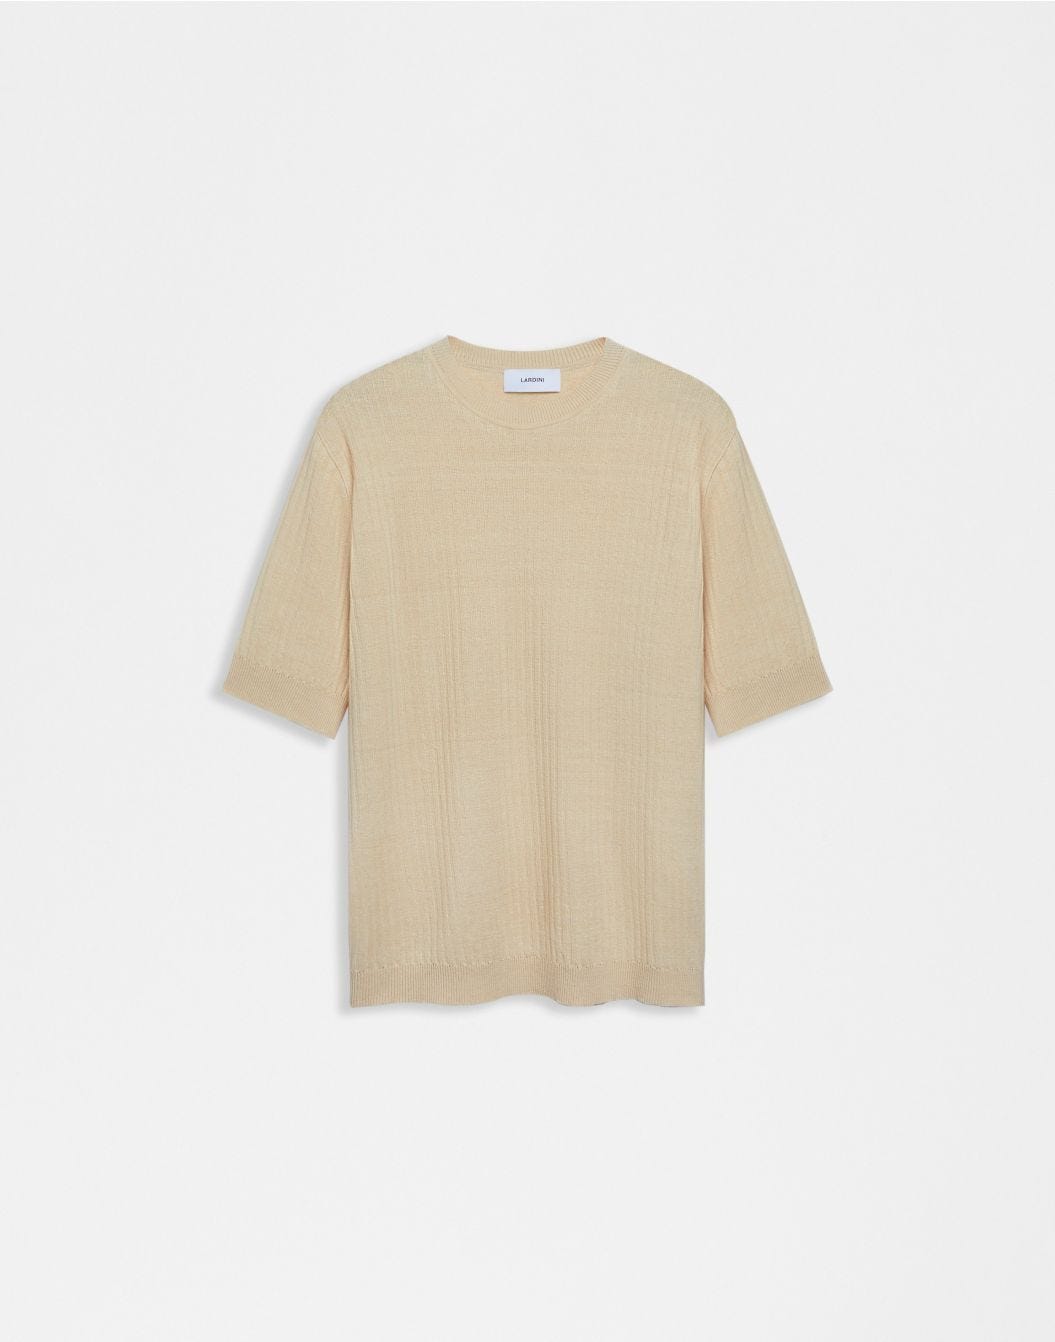 Cremefarbenes T-Shirt aus Leinen und Baumwolle mit Rippenmuster